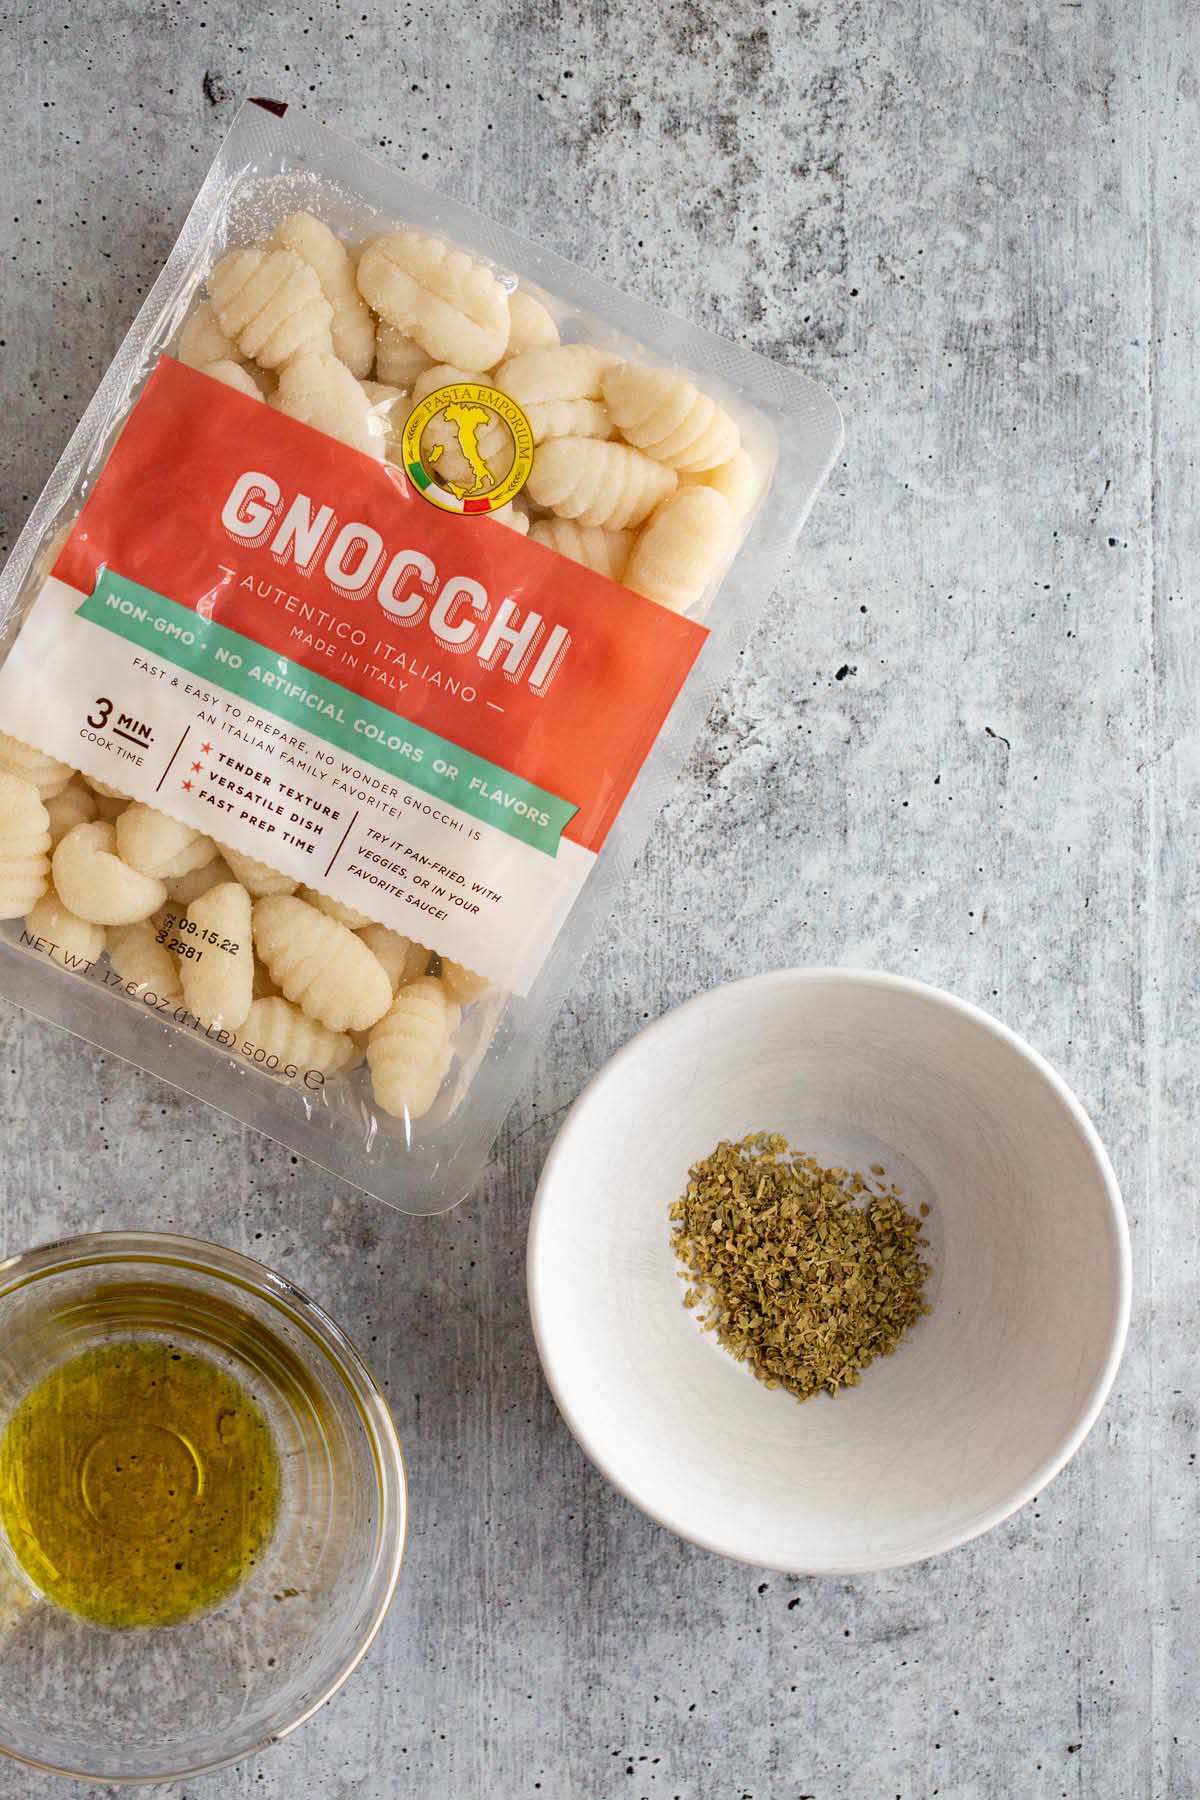 gnocchi, oregano, and olive oil